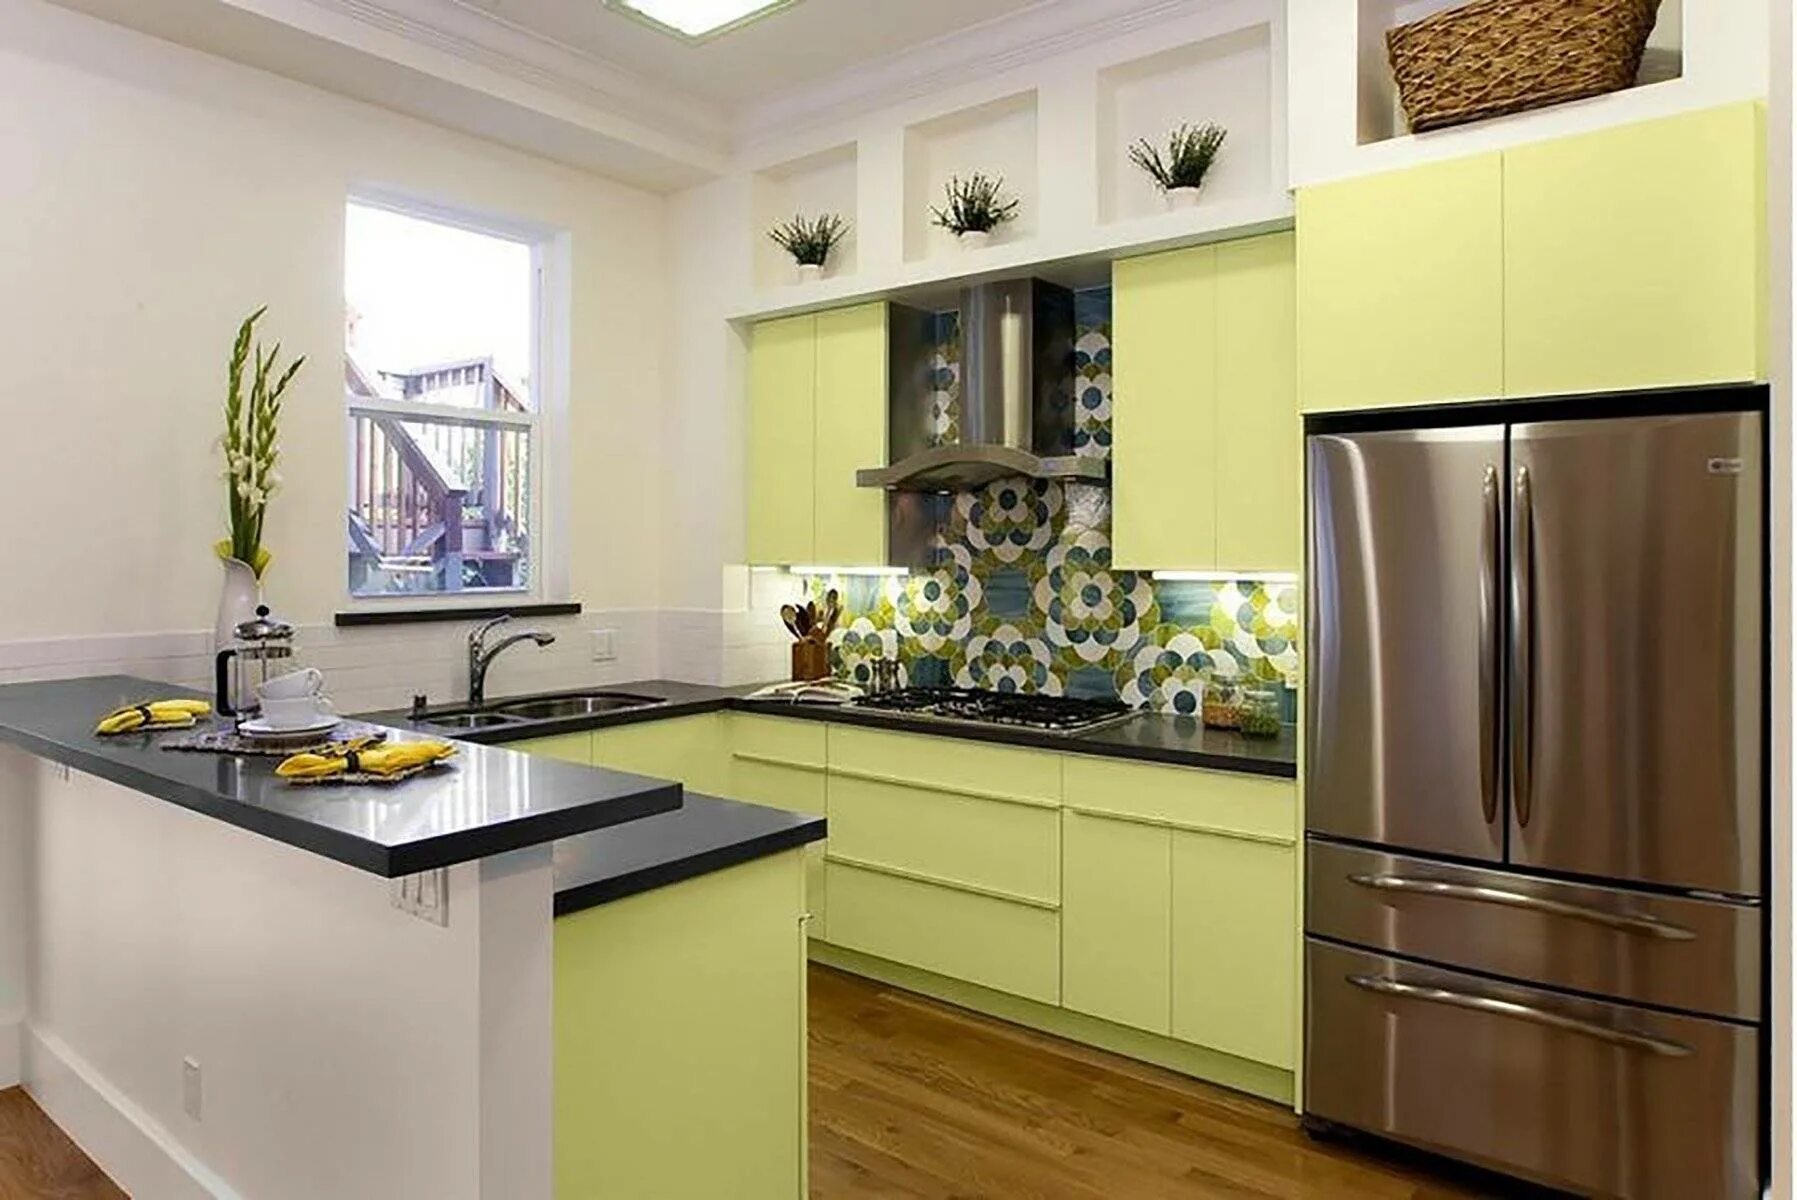 Какие цвета сочетаются на кухне. Дизайнерские решения для кухни. Кухня оливкового цвета. Кухни цветовые решения. Фисташковая кухня в интерьере.